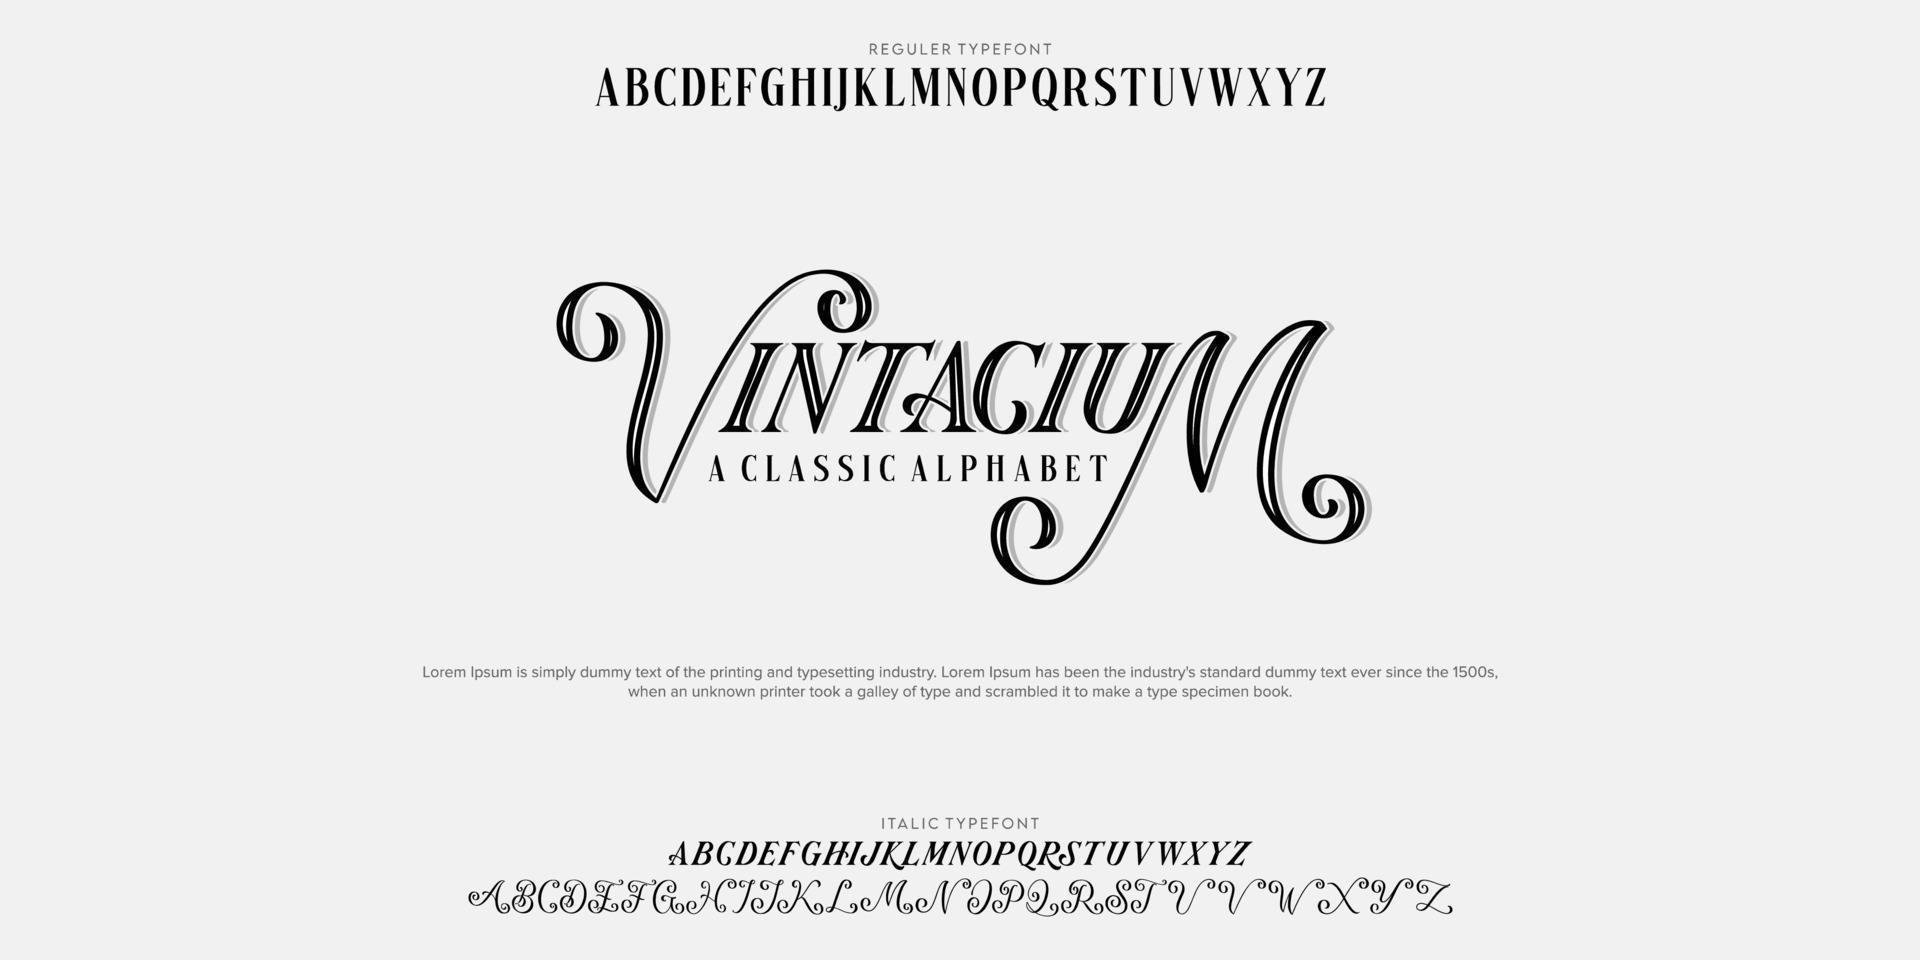 serif de script de pacote de fonte personalizada vintacium. ilustrações vetoriais de aplhabet vetor